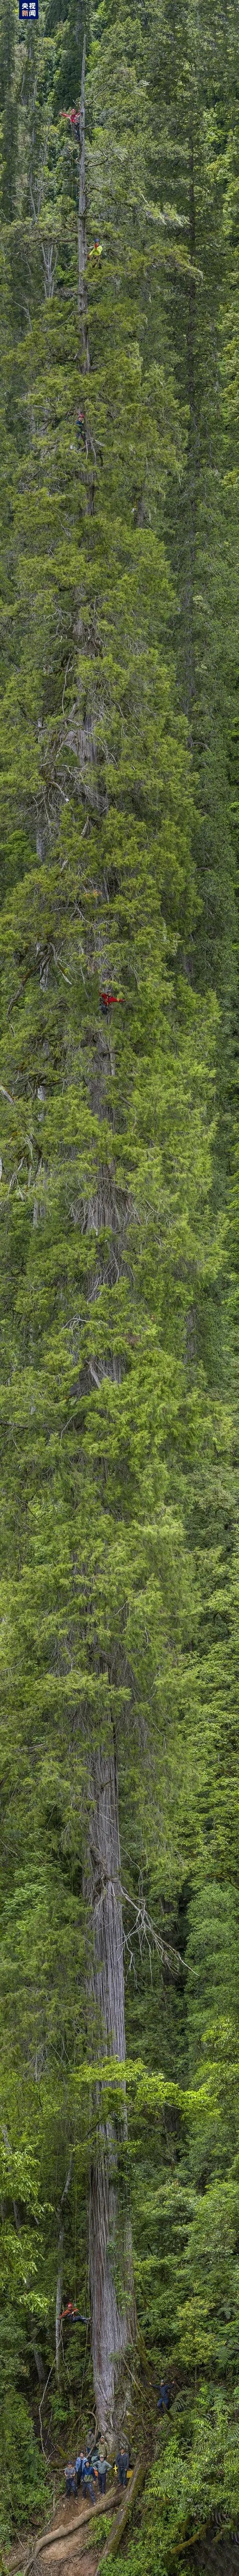 福建三人登顶亚洲最高树 发现两类疑似新物种